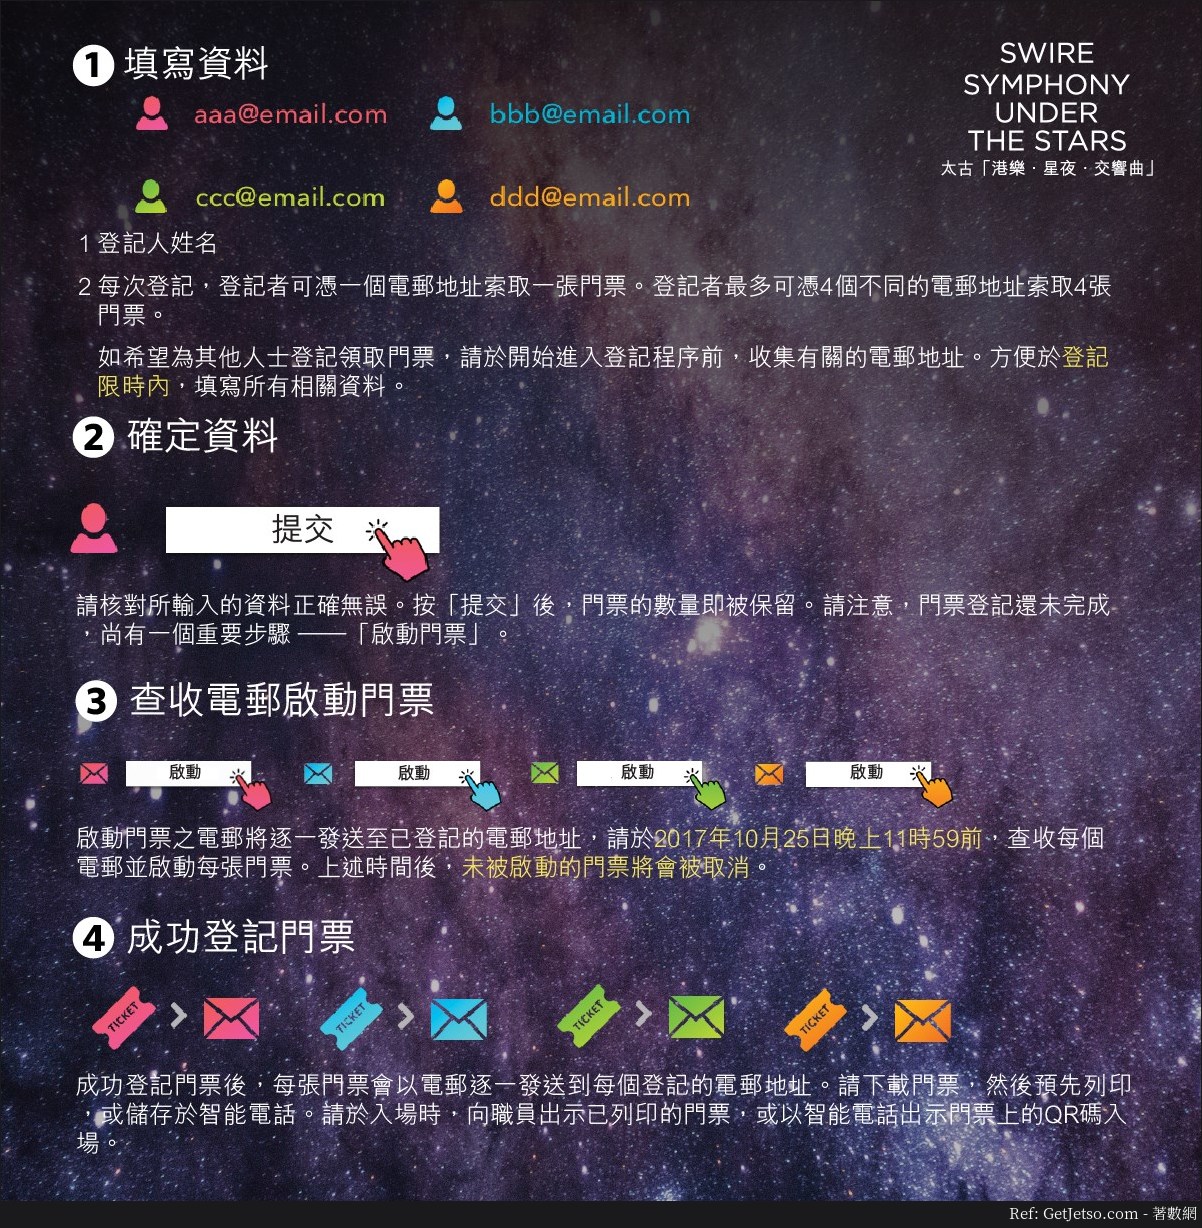 香港管弦樂團太古「港樂。星夜。交響樂」免費門票登記優惠(17年10月23日起)圖片1